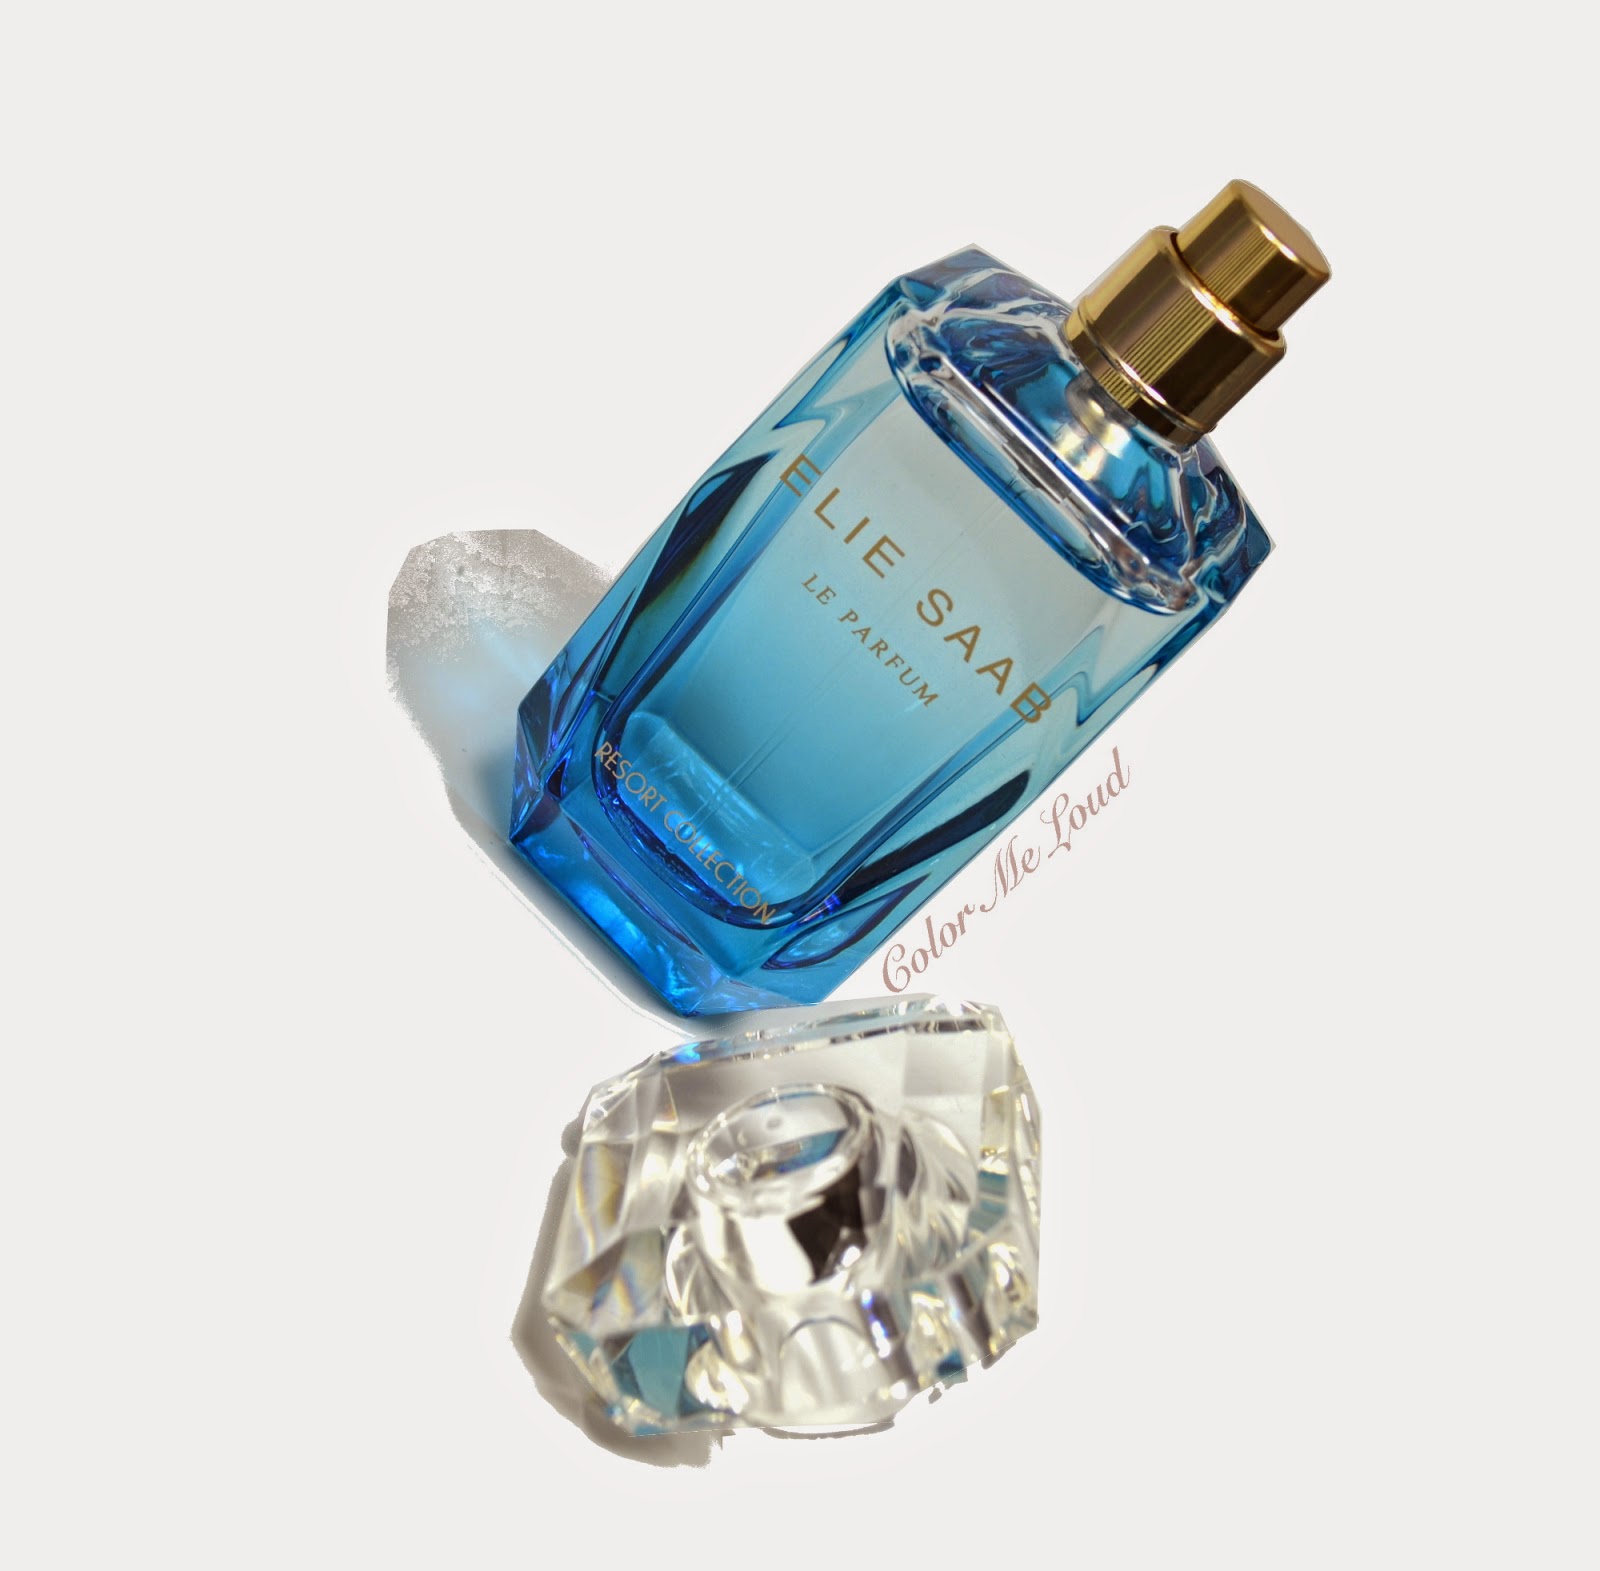 Elie Saab Le Parfum Resort Collection Eau de Toilette Review  